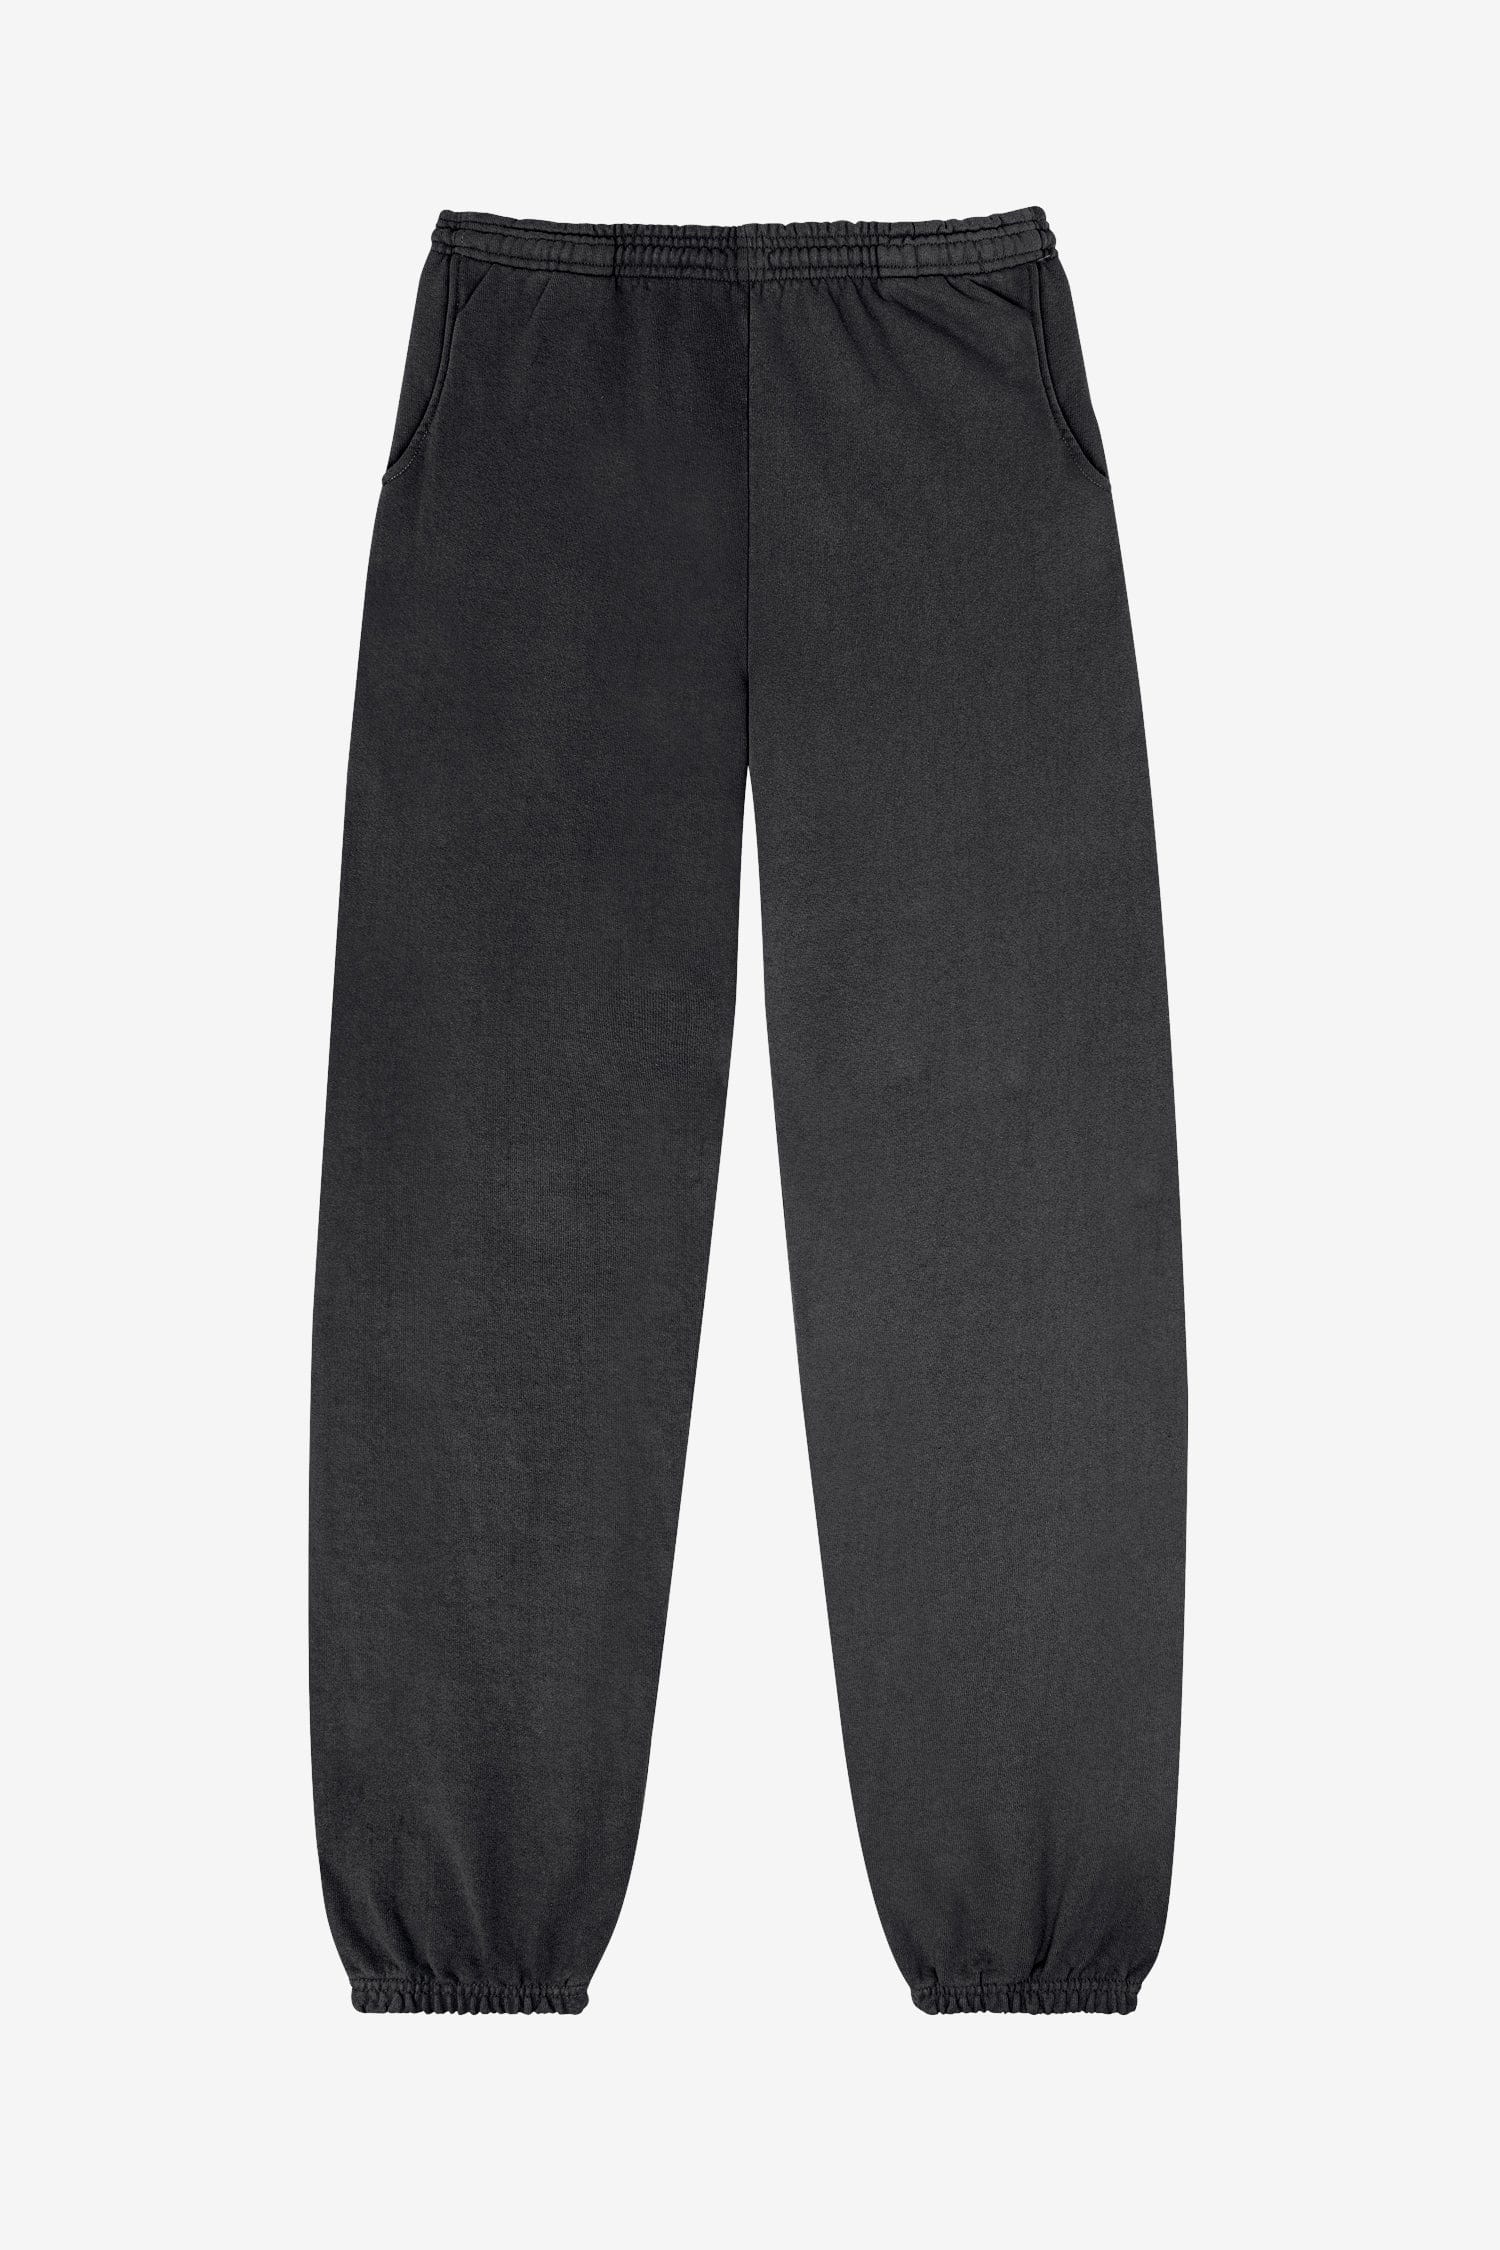 heavy fleece sweatpants Black (us:Mサイズ)ロレンゾ